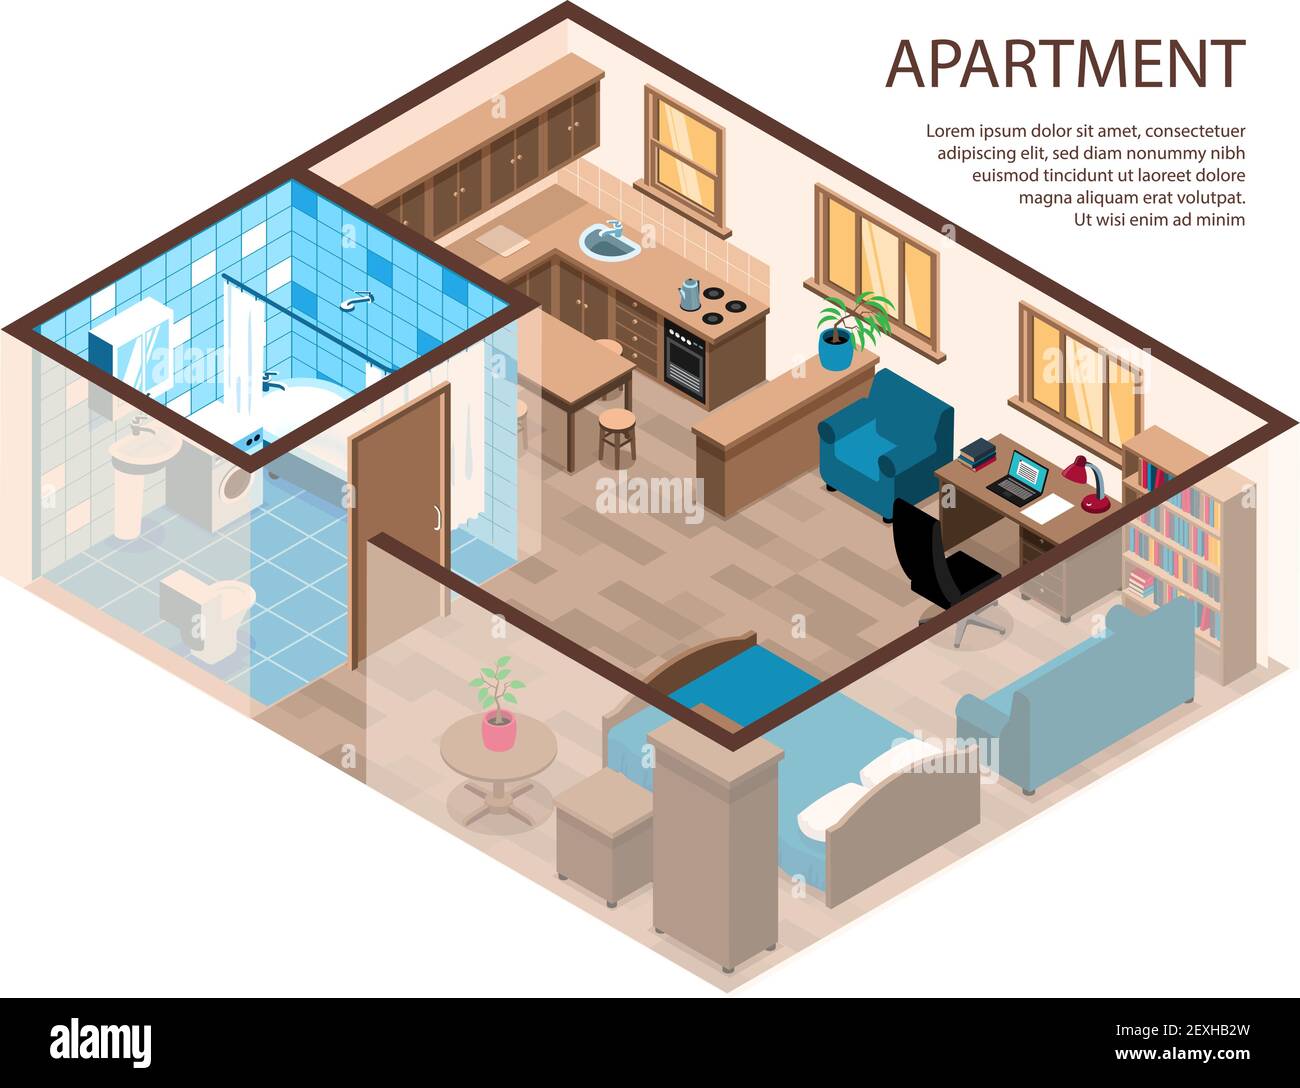 Ein-Zimmer-Wohnung effizientes Design isometrische Zusammensetzung mit Bettecke Studie Bereich Möbel Küche Bad Vektor Illustration Stock Vektor